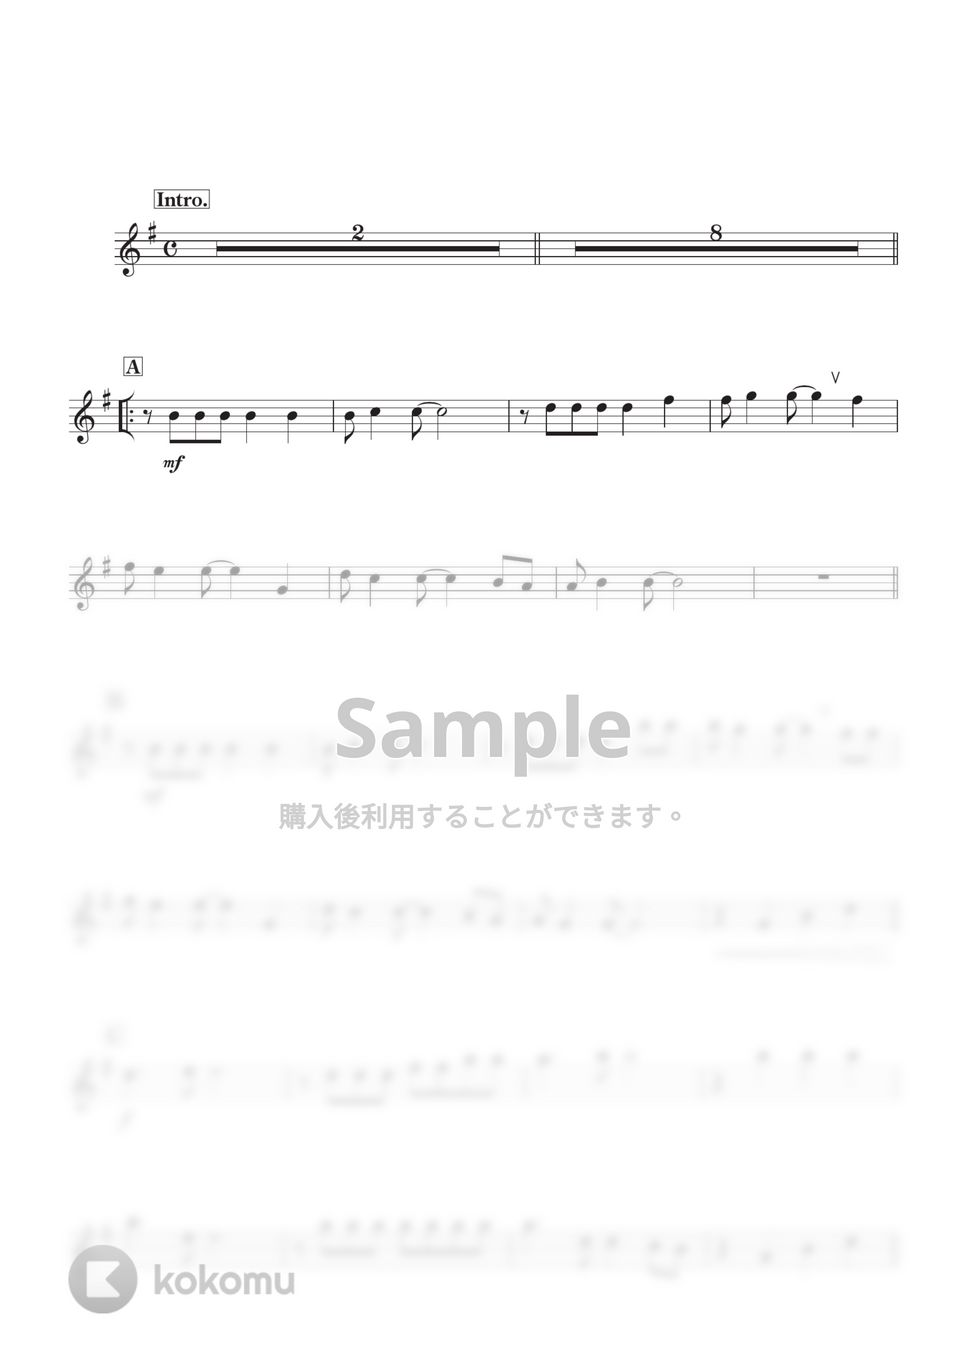 スピッツ - 魔法のコトバ (B♭) by kanamusic